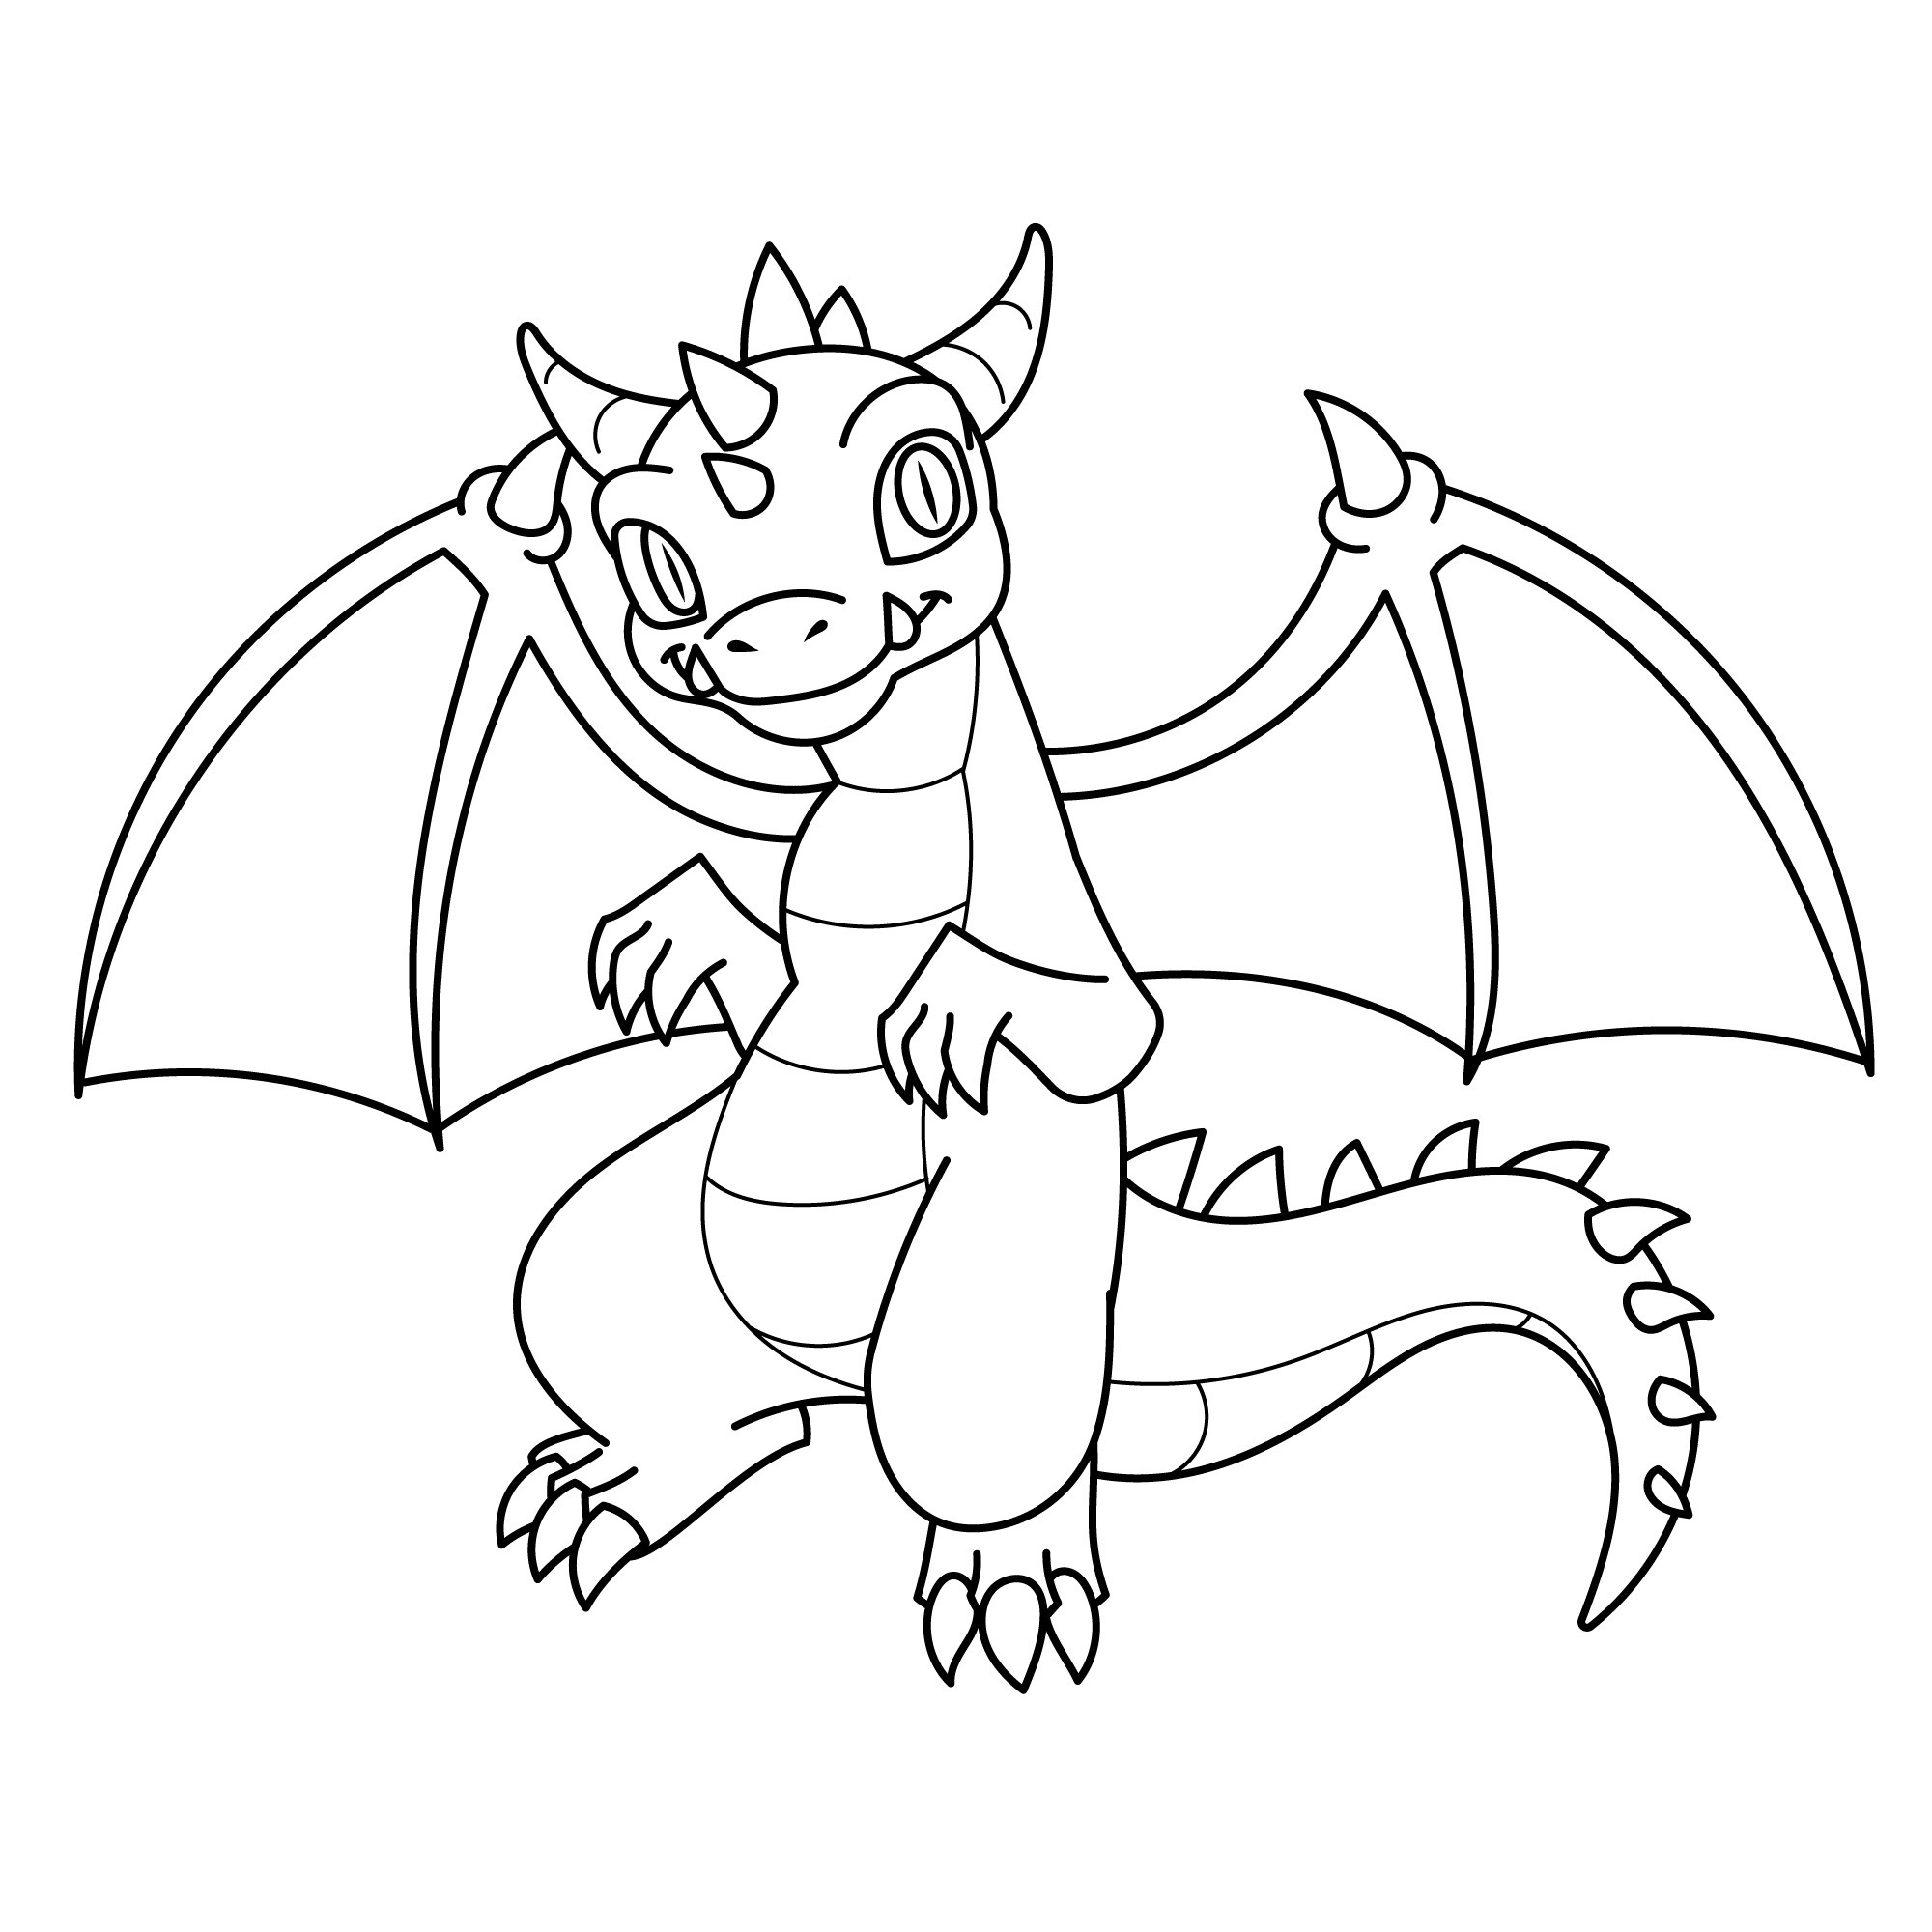 Раскраска для детей: раскраска дракон кривоклык